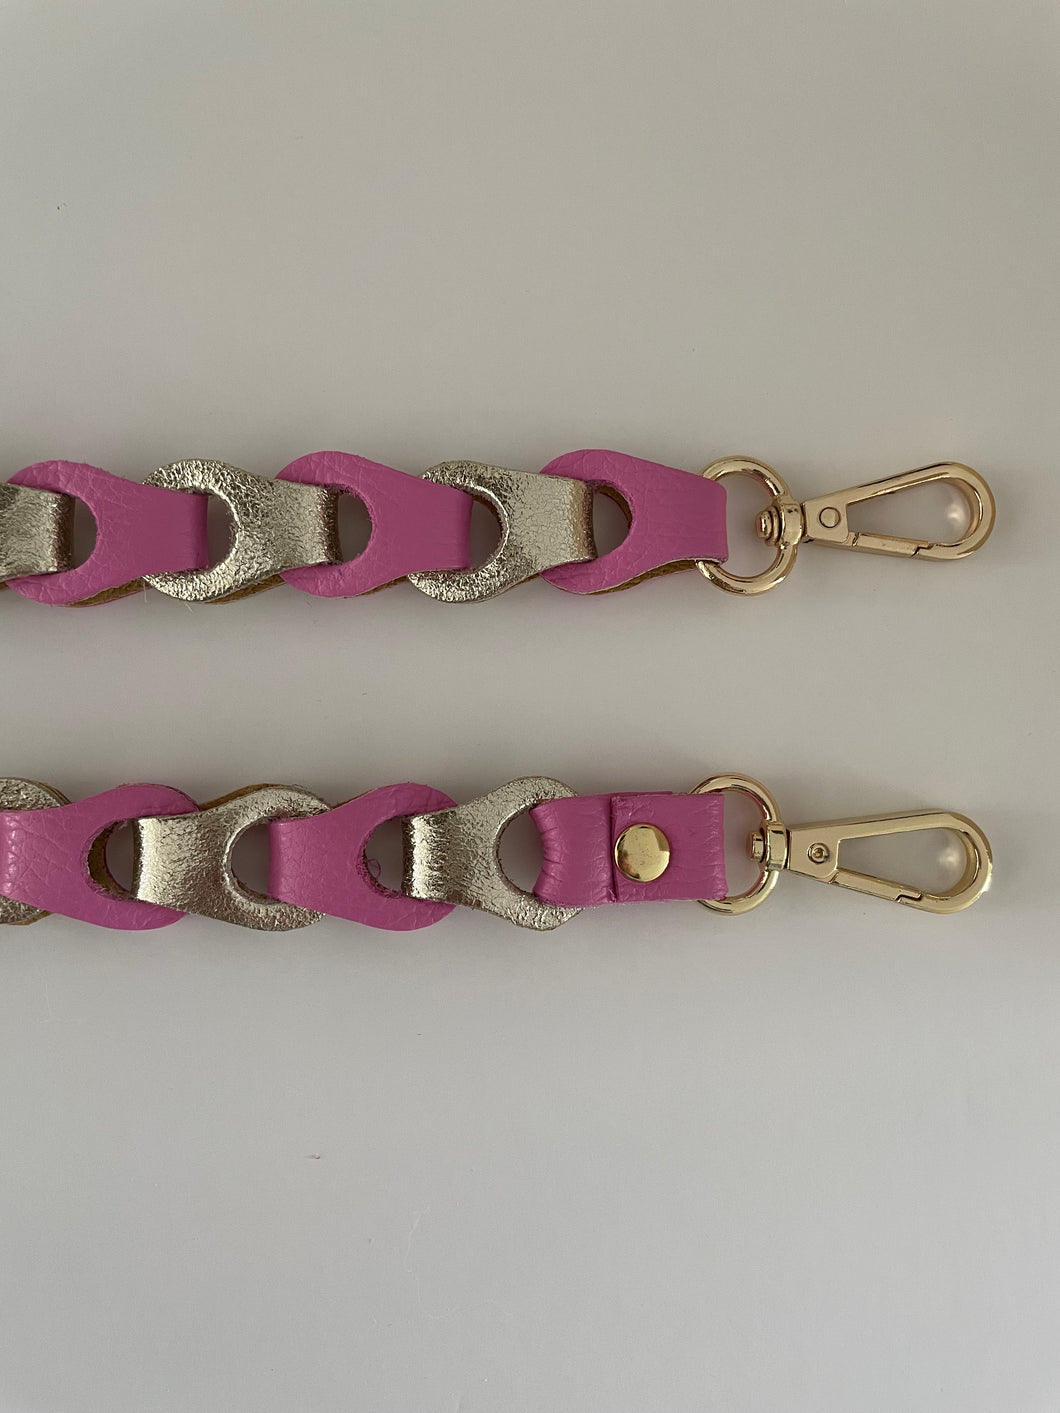 Lederen Bagstrap Small, schouderband voor aan een tas. De band is ca. 2,5cm breed en is niet verstelbaar. De schouderband is in verschillende kleuren verkrijgbaar: Zwart-Beige-Zilvermetallic, Roze-Goudmetallic,, Wit-Taupe-Beige-Goudmetallic.